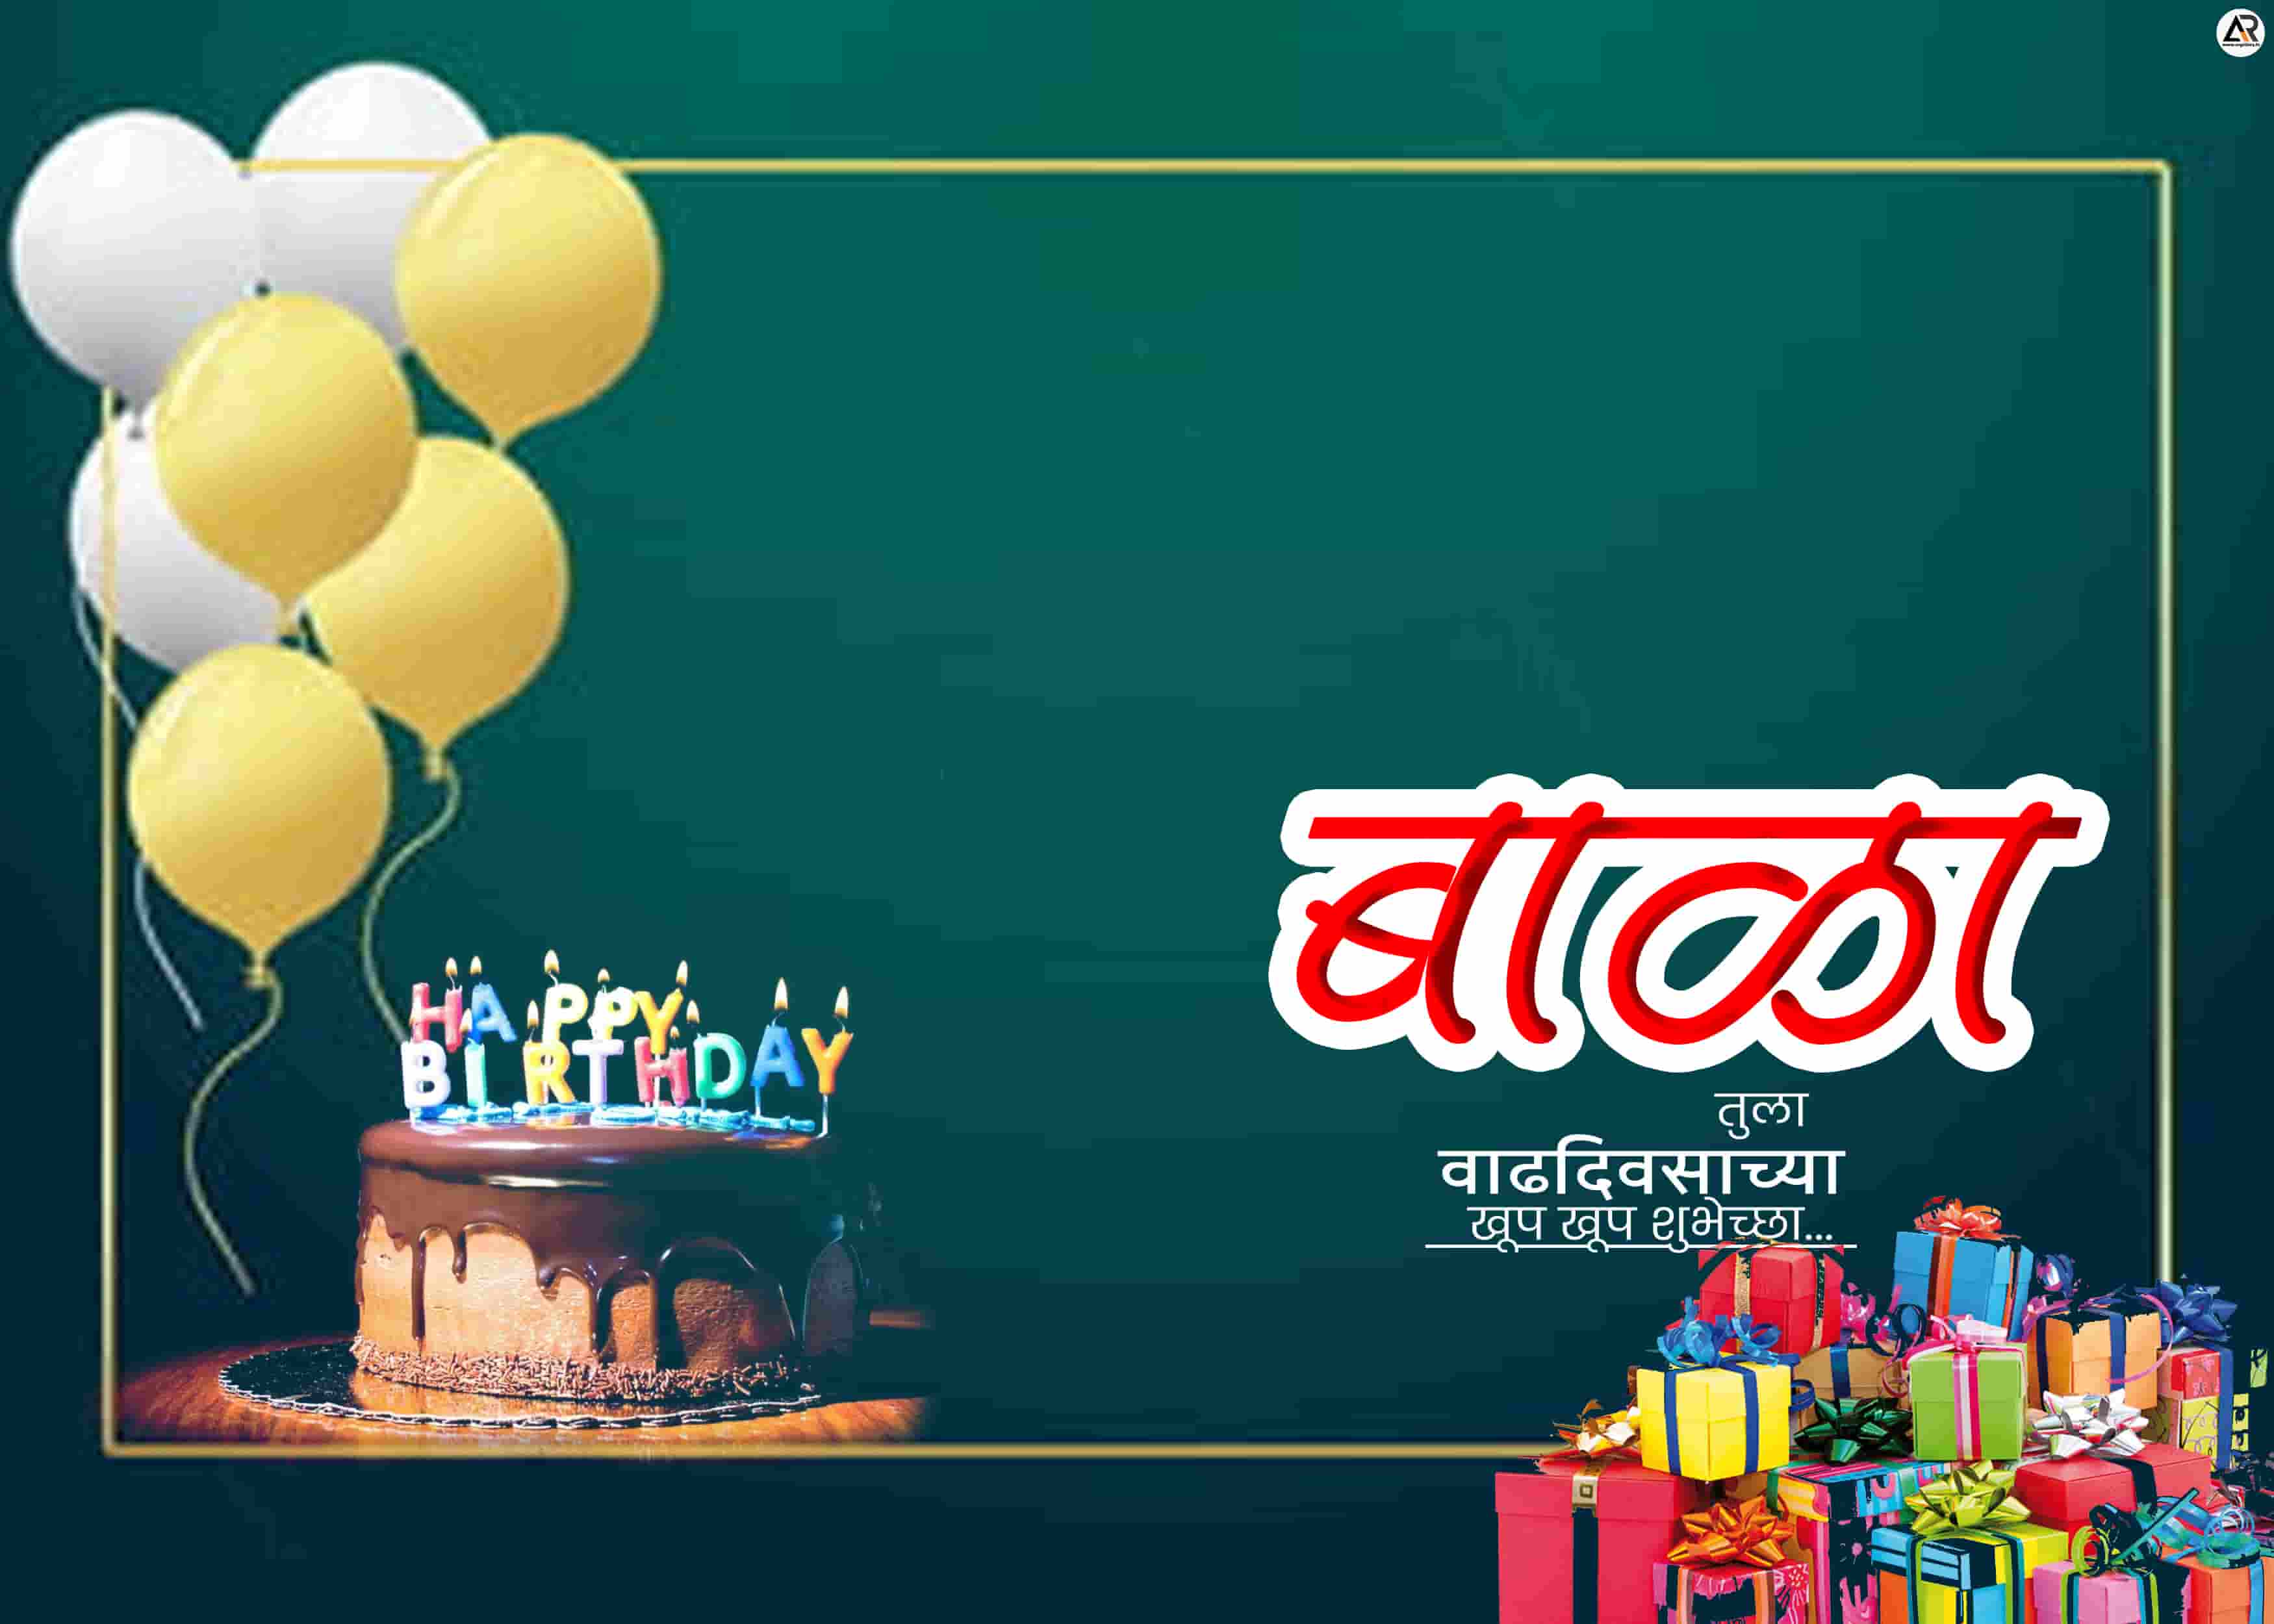 marathi birthday banner background hd | baby birthday banner download free